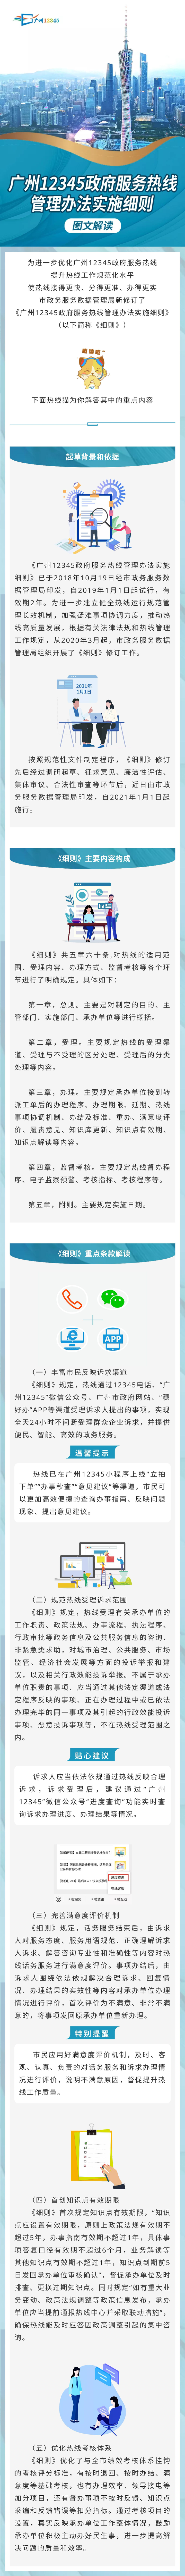 2.广州12345政府服务热线管理办法实施细则图文解读材料.jpg